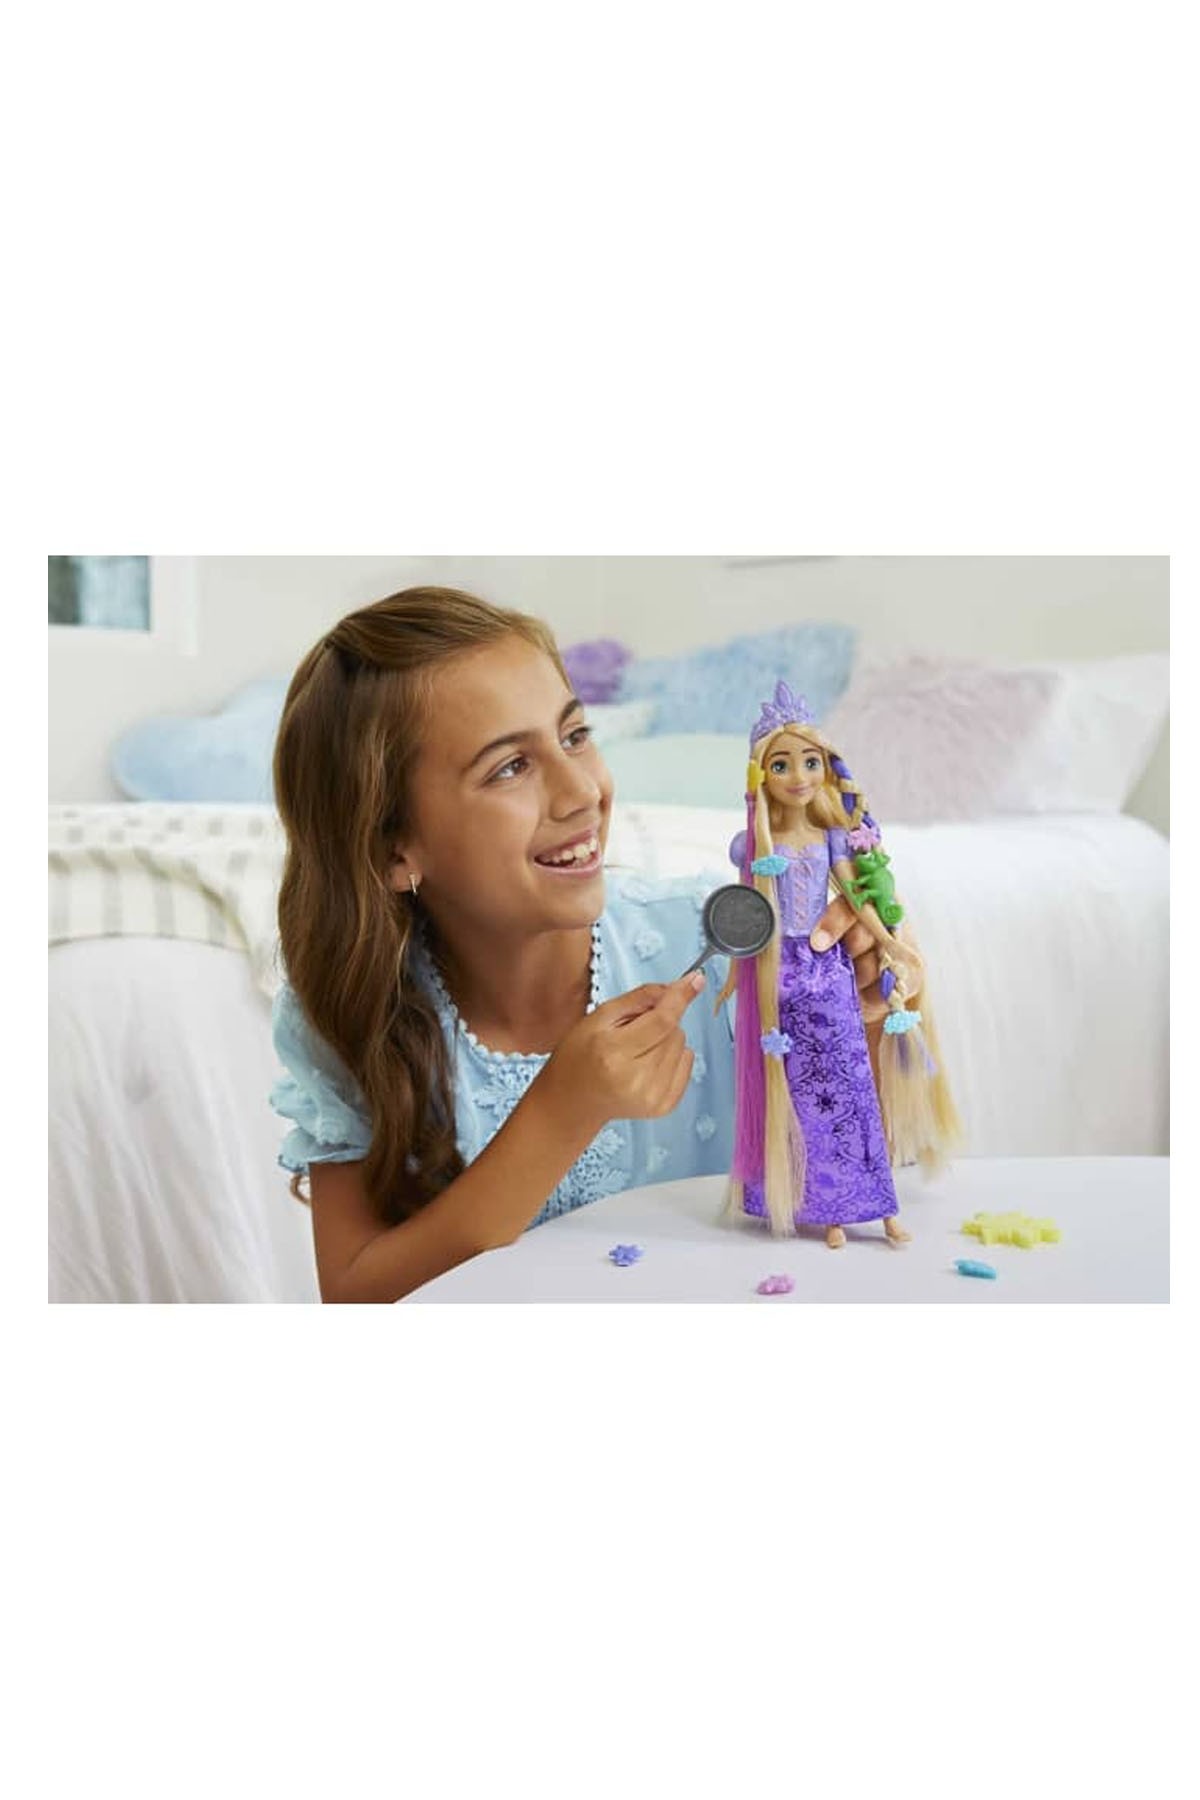 Disney Prenses Renk Değiştiren Sihirli Saçlı Rapunzel HLW18